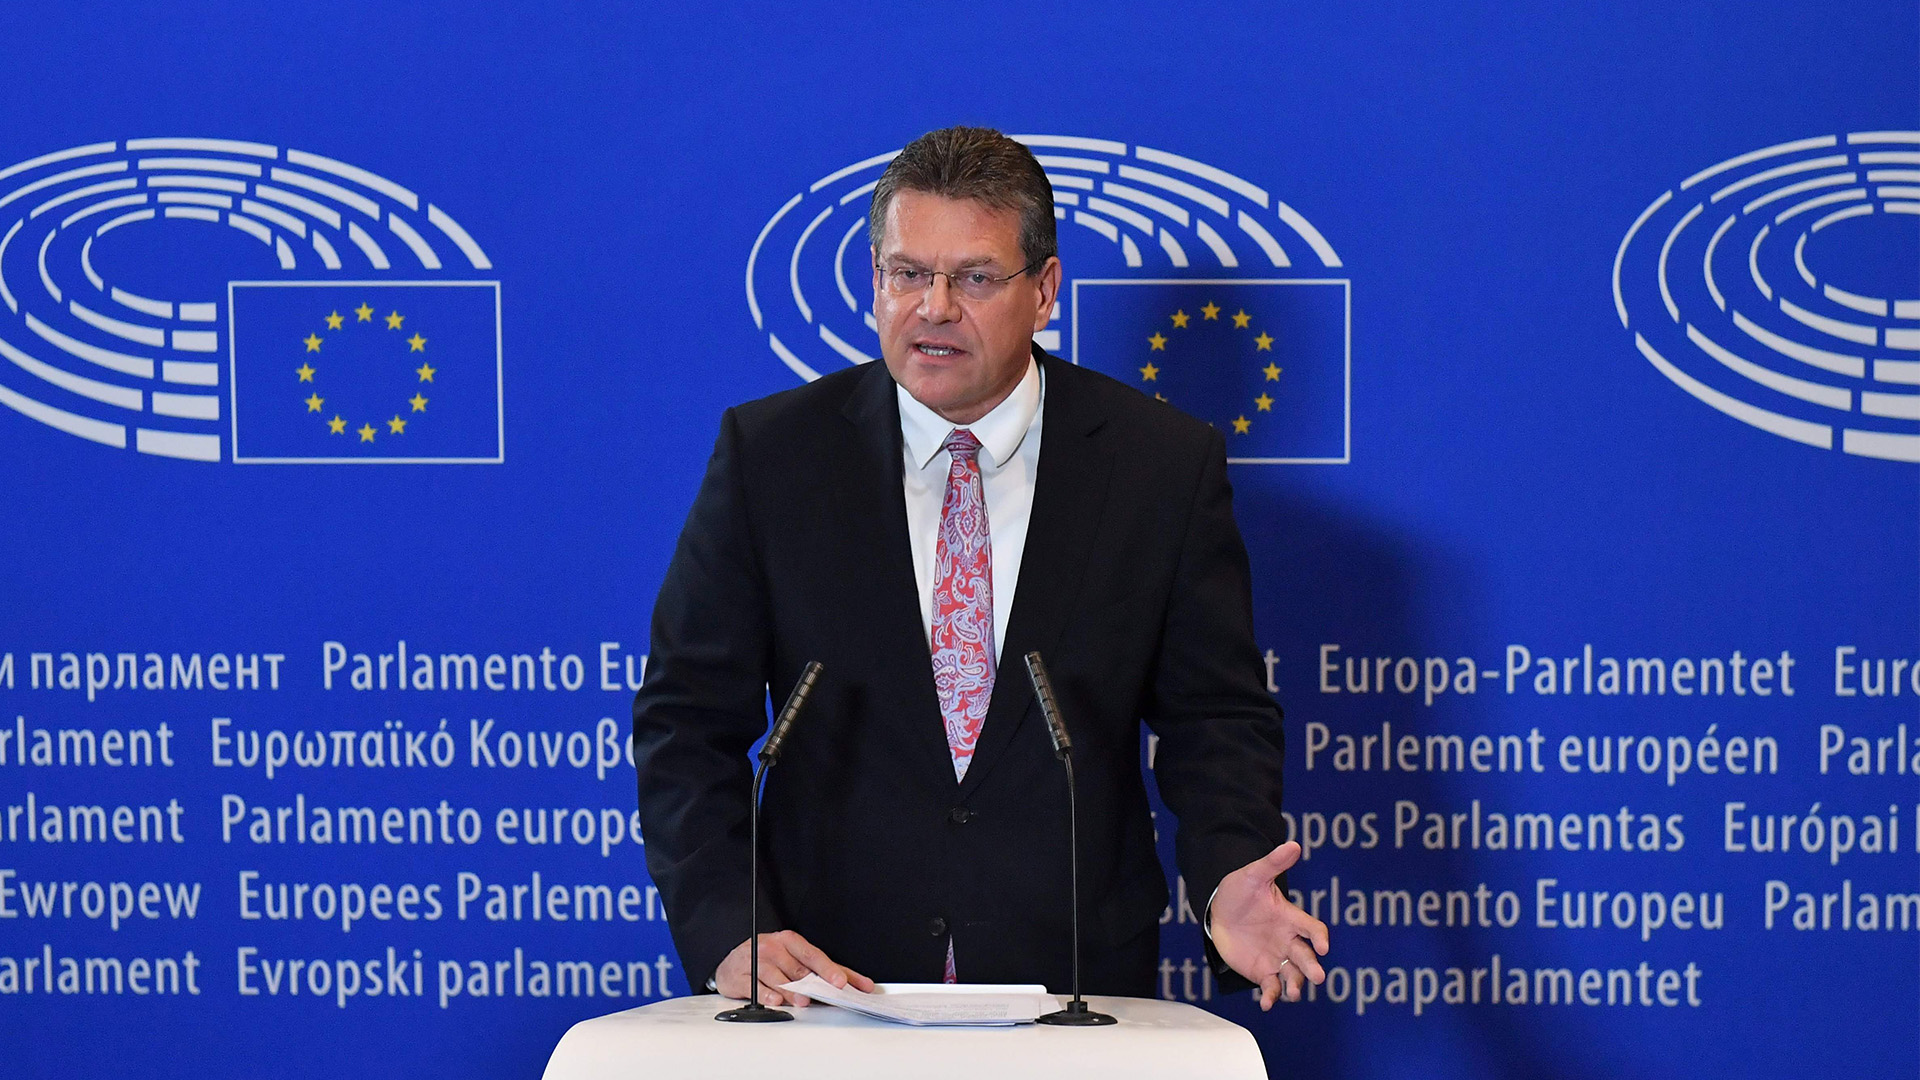 Der slowakische Sozialdemokrat Maros Sefcovic will 2019 neuer EU-Kommissionspräsident werden. | AFP